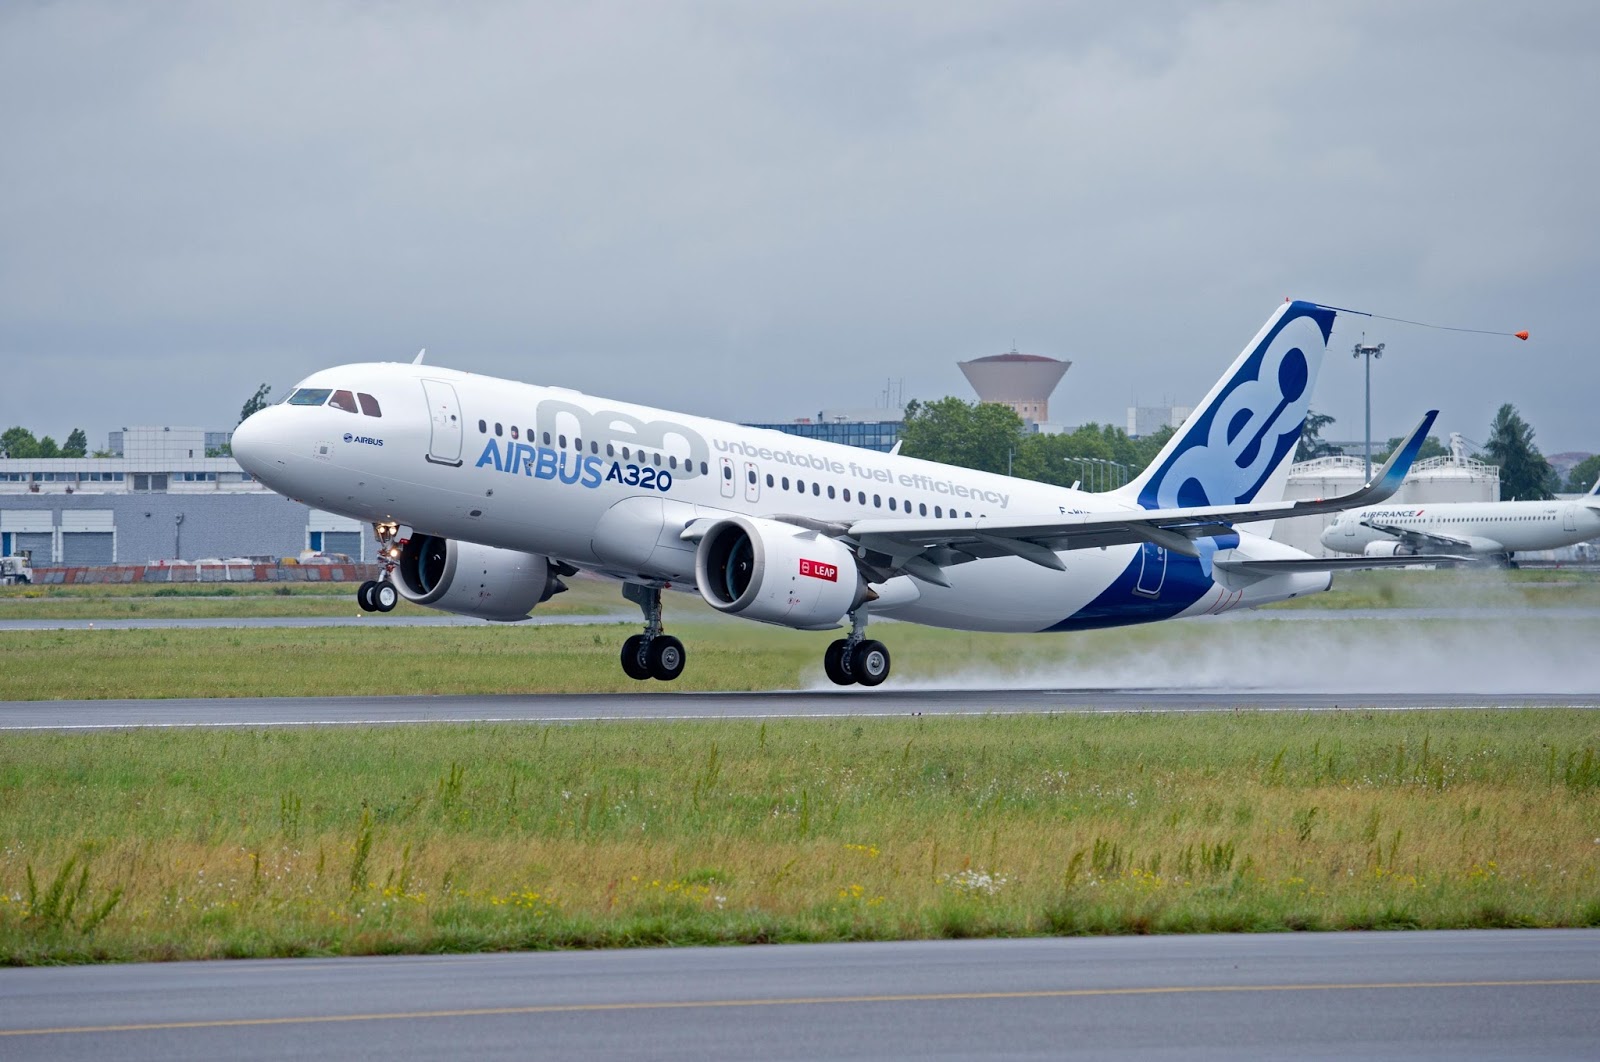 A320neo Maiden Flight Takeoff With Cfm Engine Aeronef